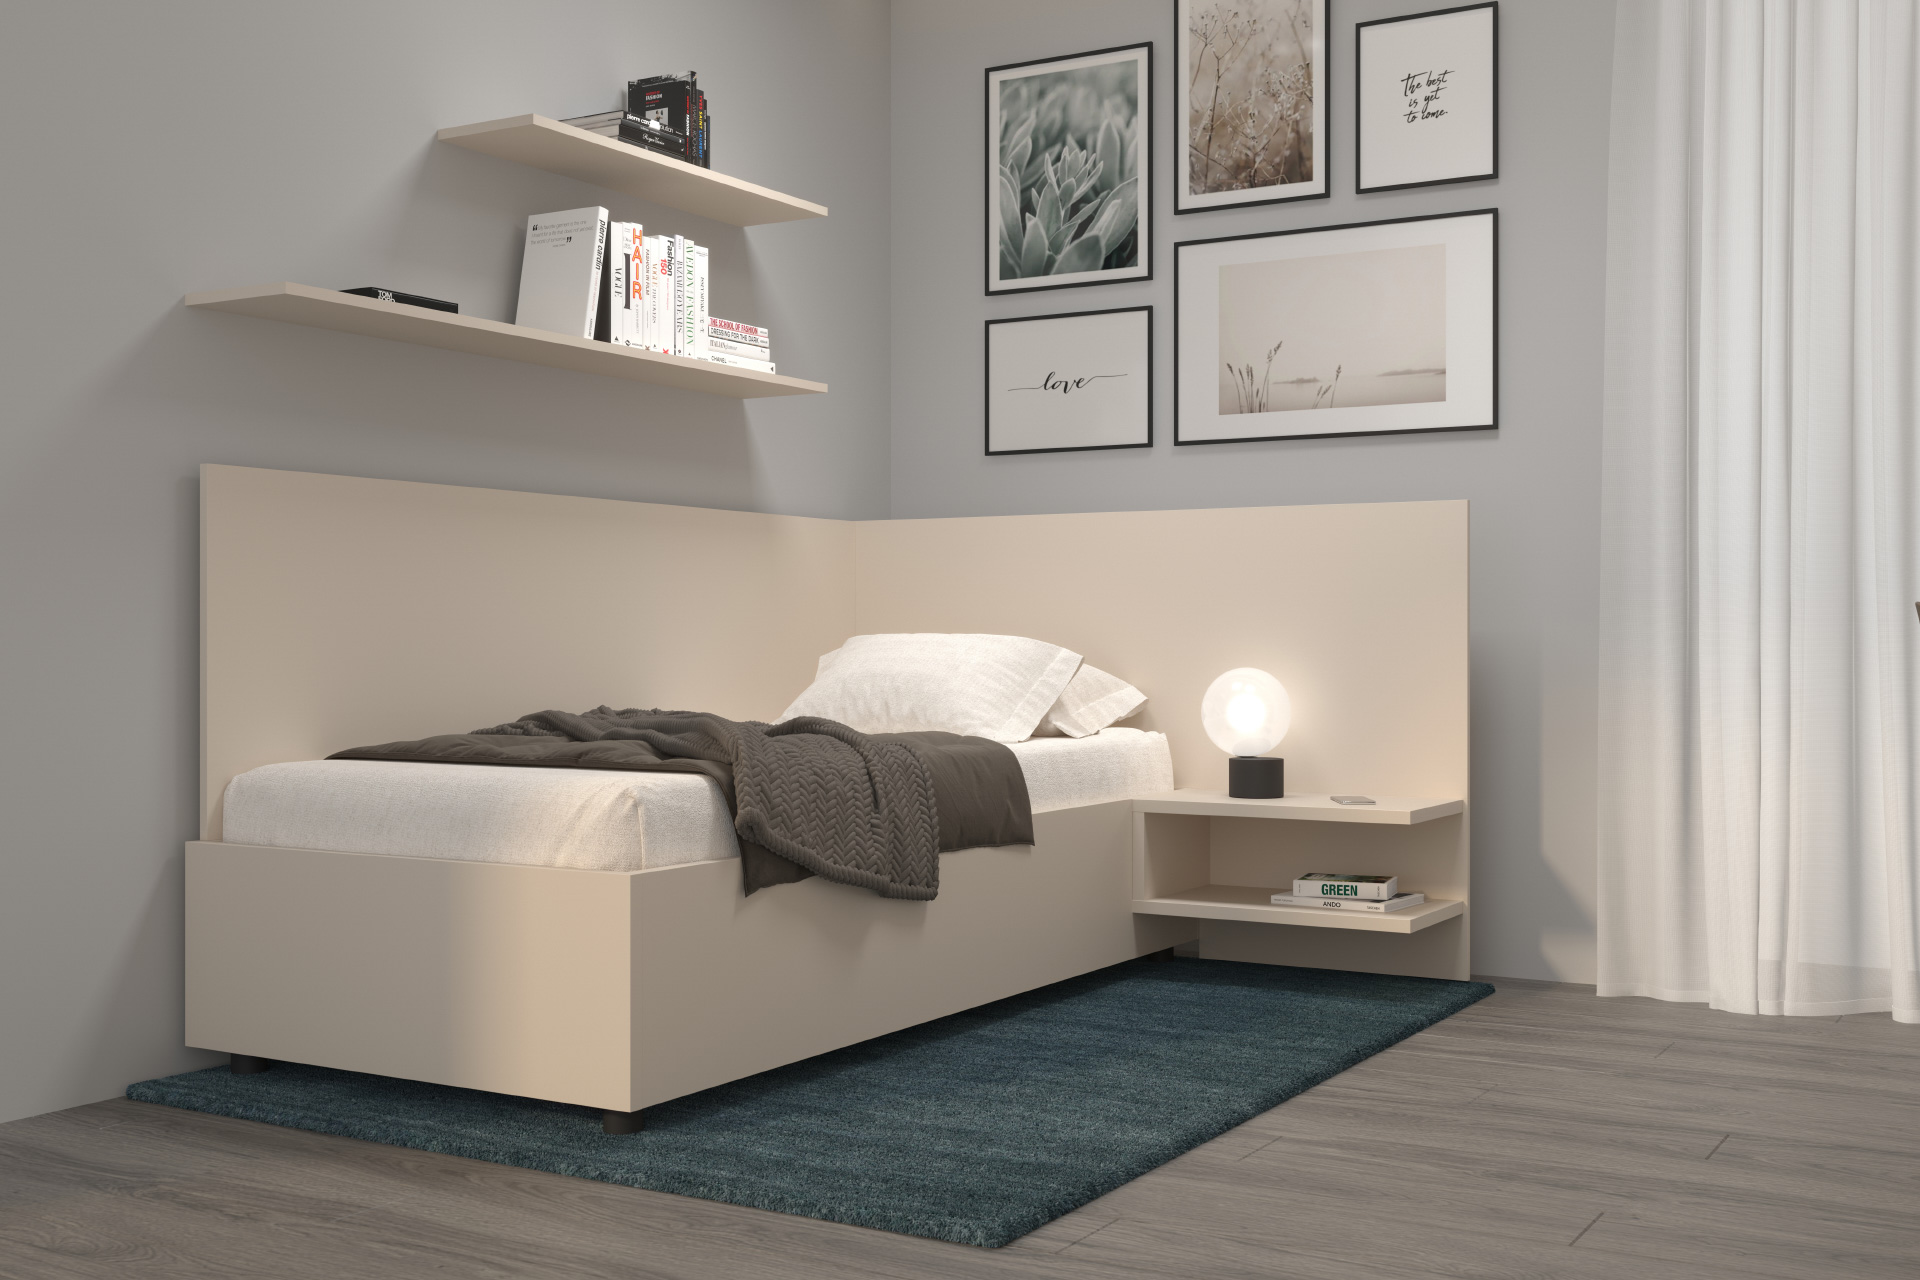 Hanák nábytek ložnice SALY s jednoduchým a uceleným vzhledem